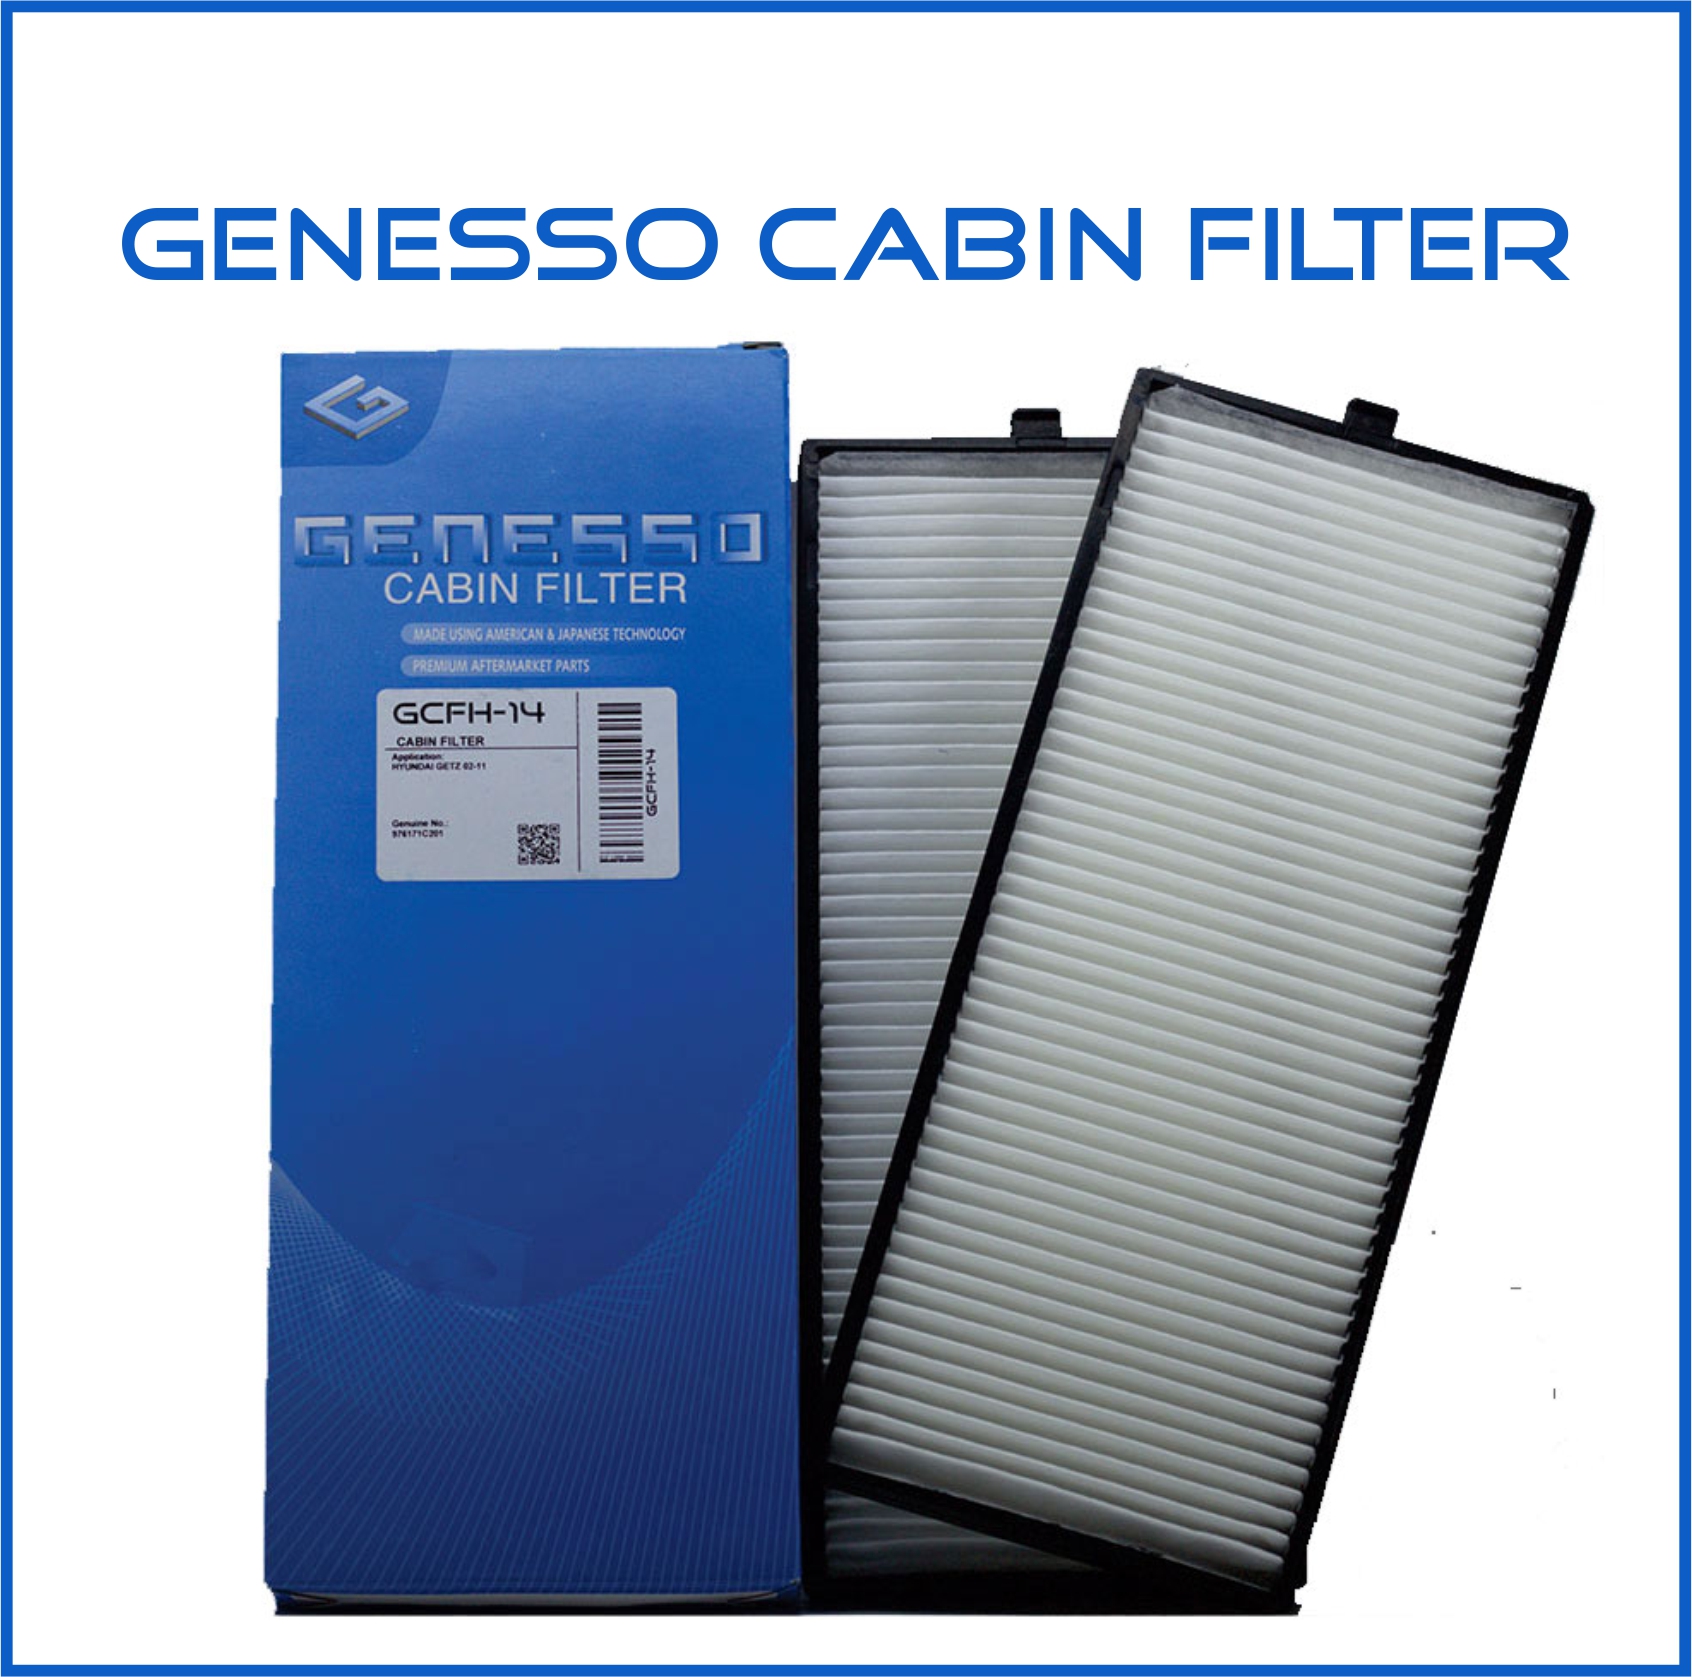 Genesso Cabin Filter